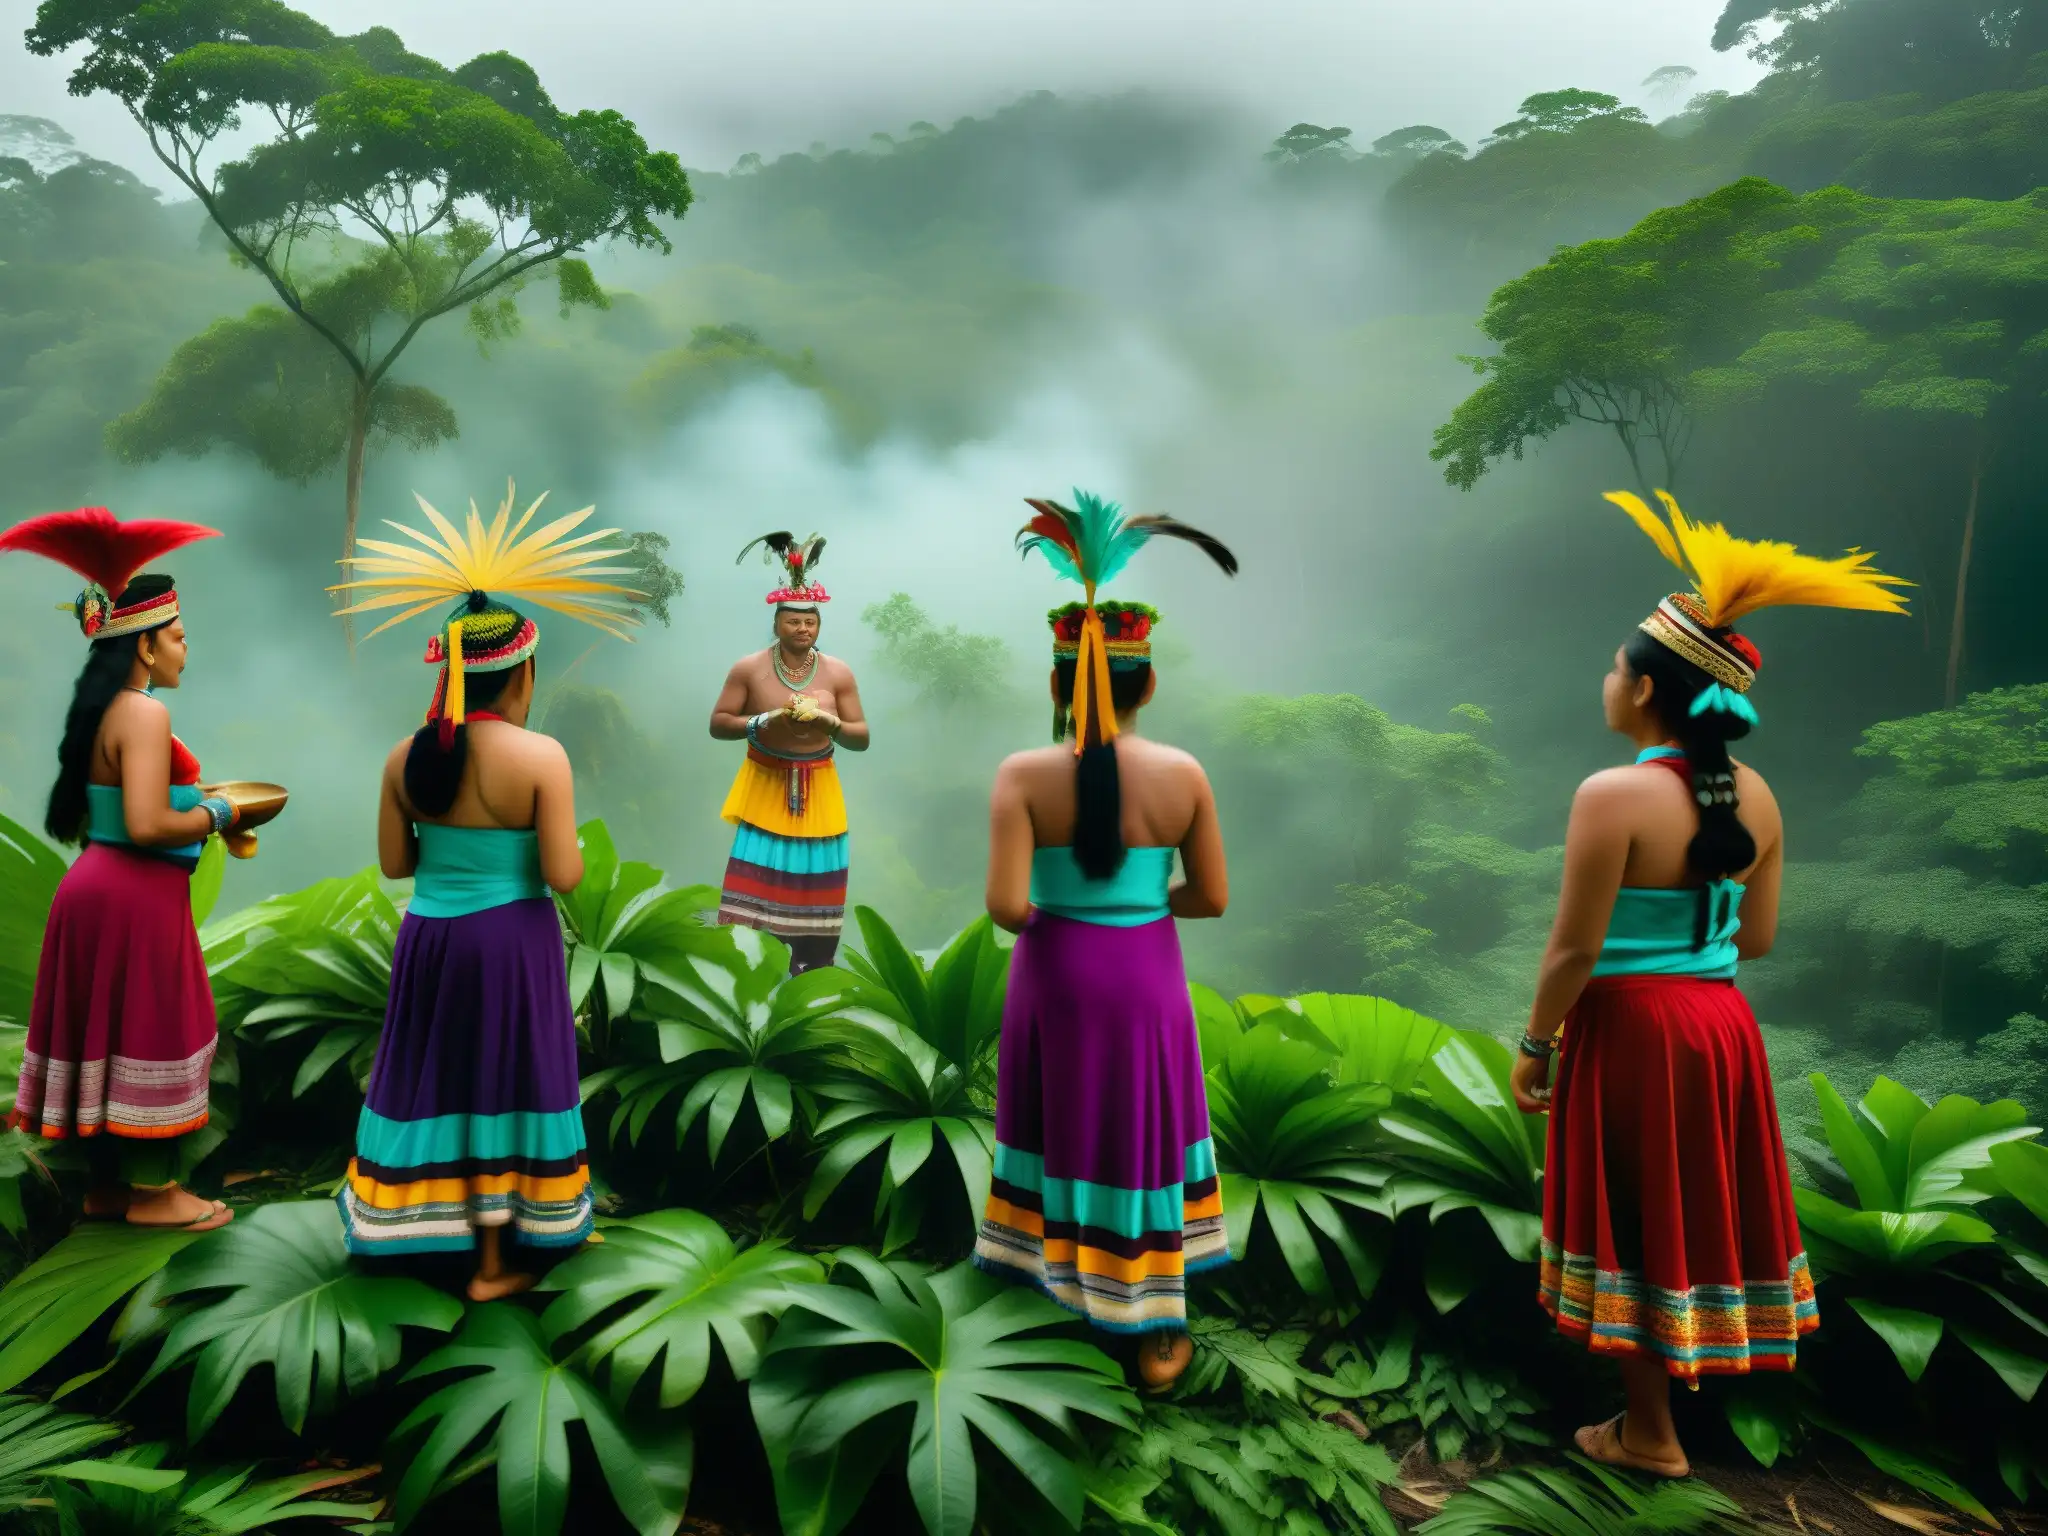 Una escena mística en la selva: mayas realizan ritual para honrar a Los Aluxes en la mitología maya, vistiendo atuendos coloridos y haciendo ofrendas